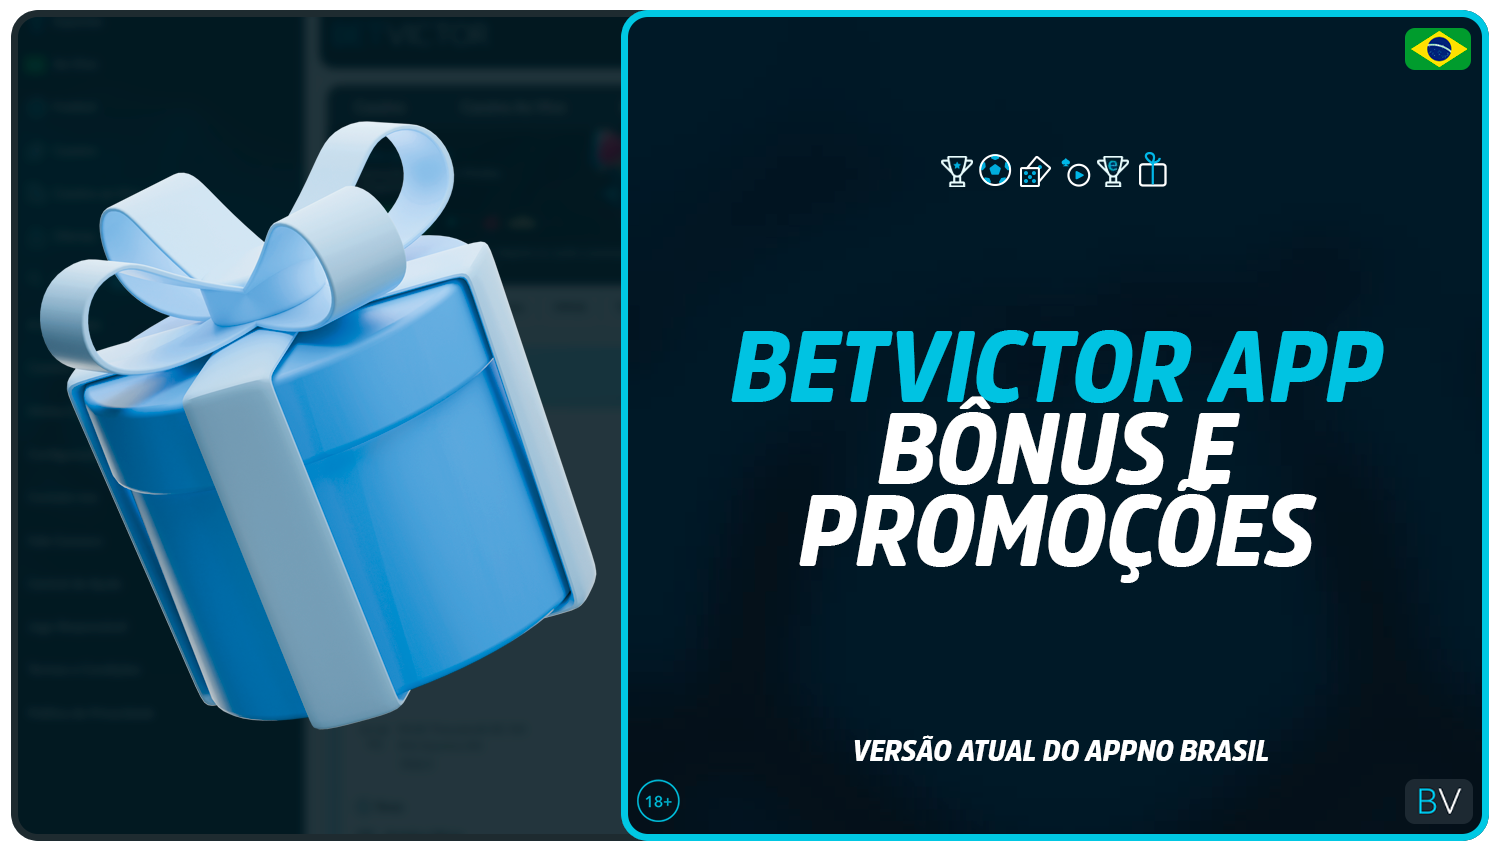 Promoções e bónus disponíveis na aplicação móvel BetVictor Brasil